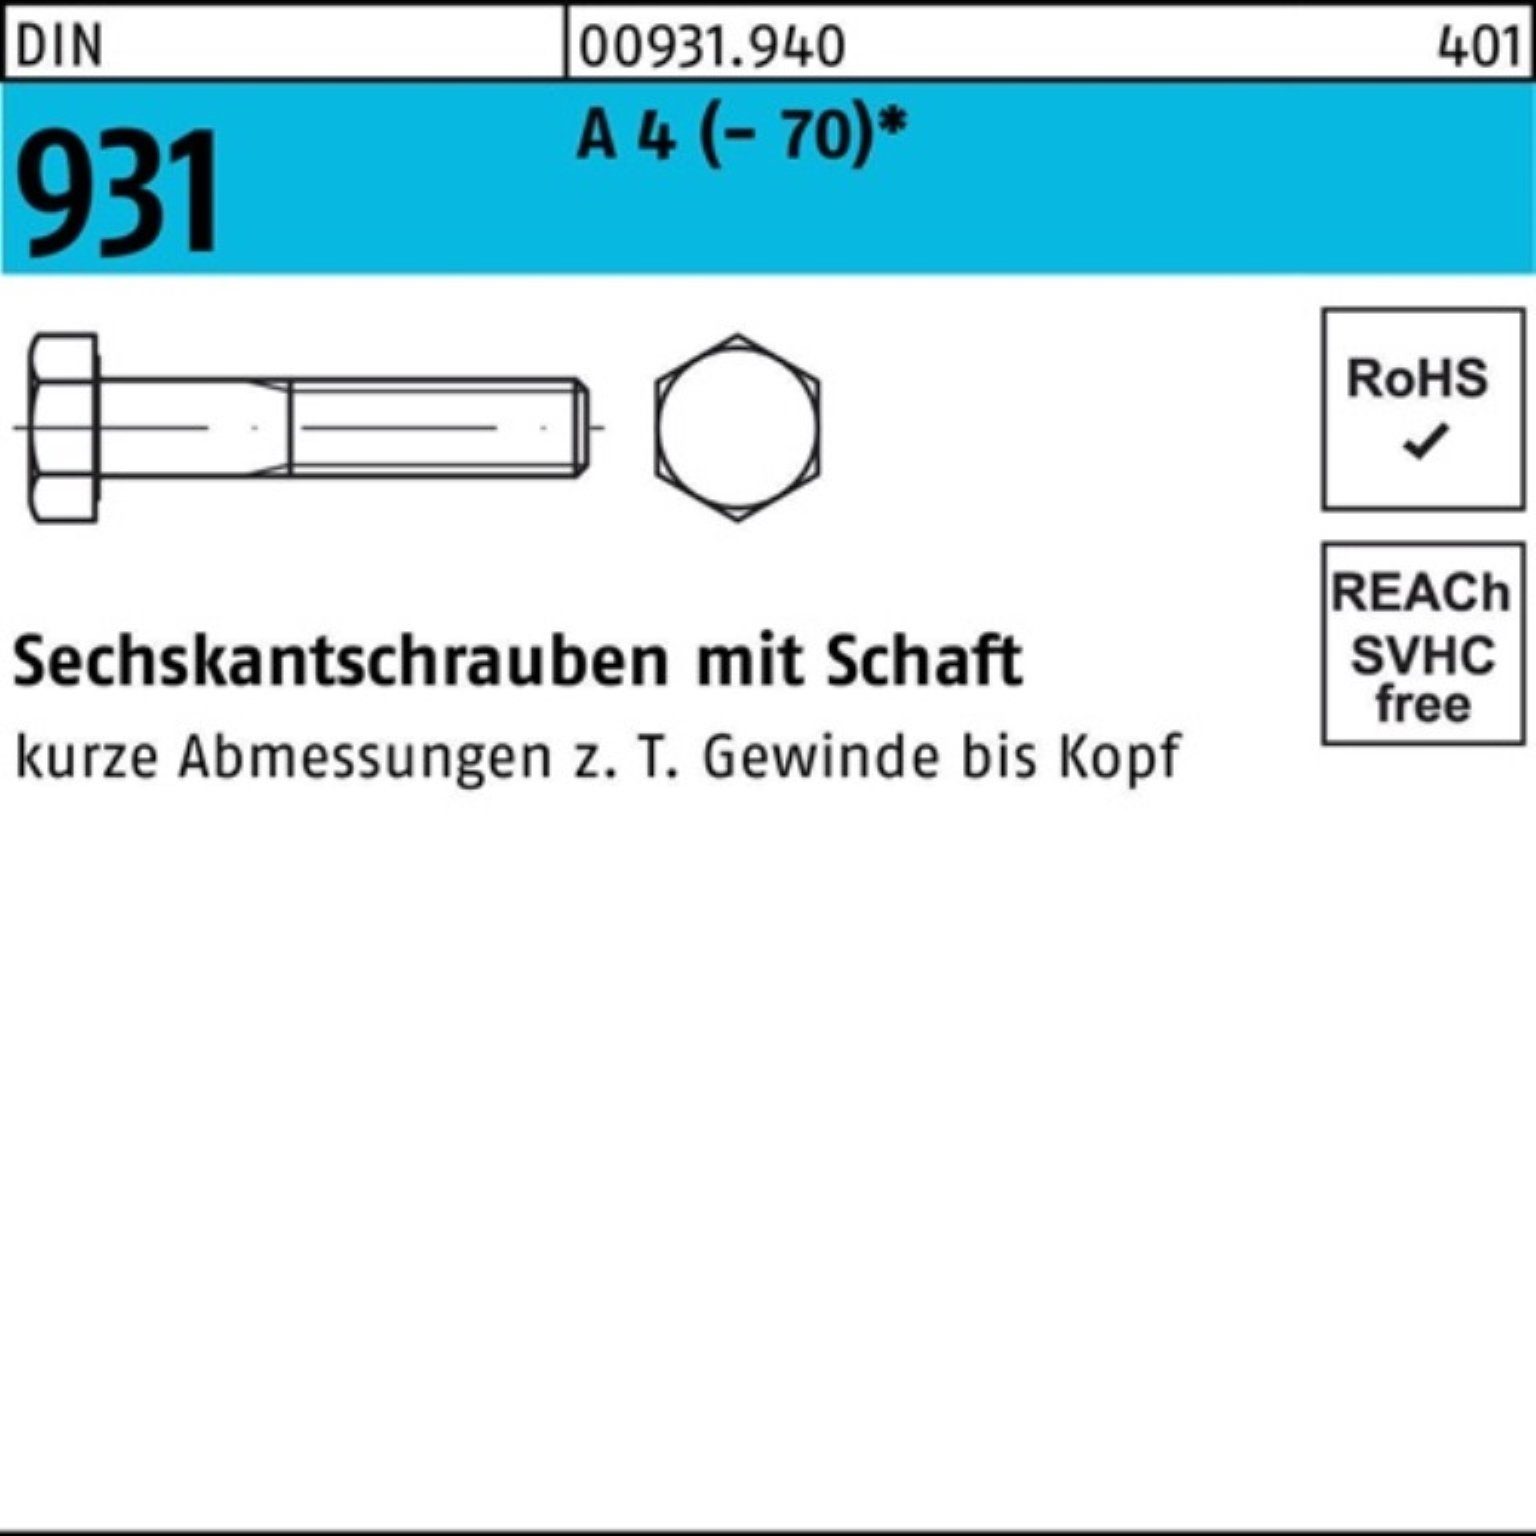 140 DIN A Reyher Stü 4 100er Schaft Sechskantschraube 931 (70) Pack 1 Sechskantschraube M16x